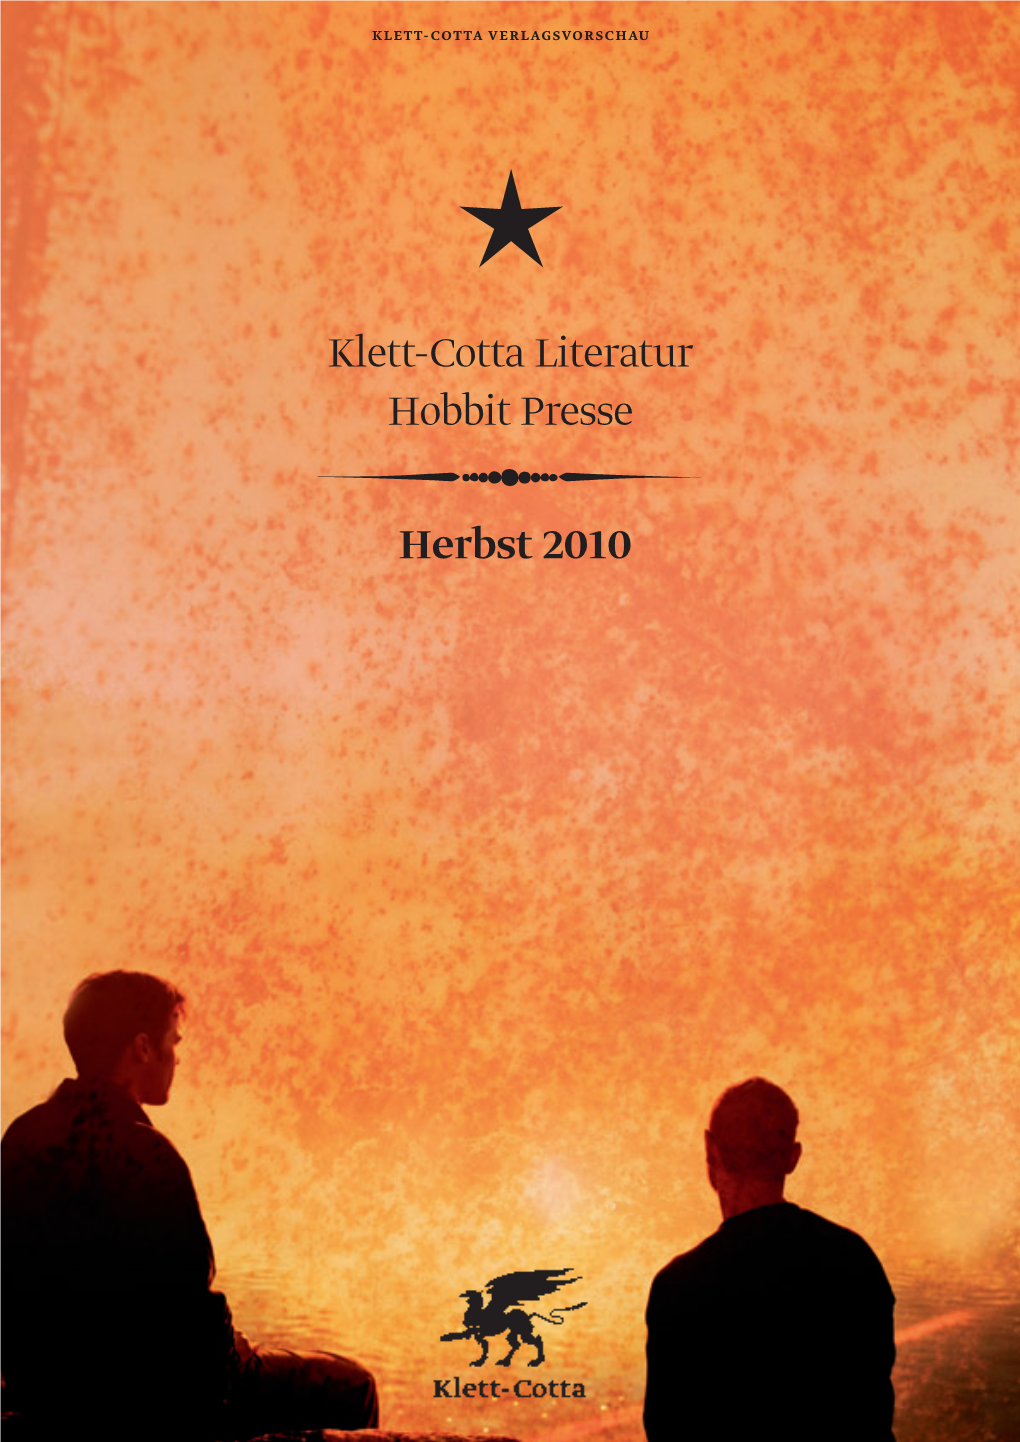 Klett-Cotta Literatur Hobbit Presse Herbst 2010